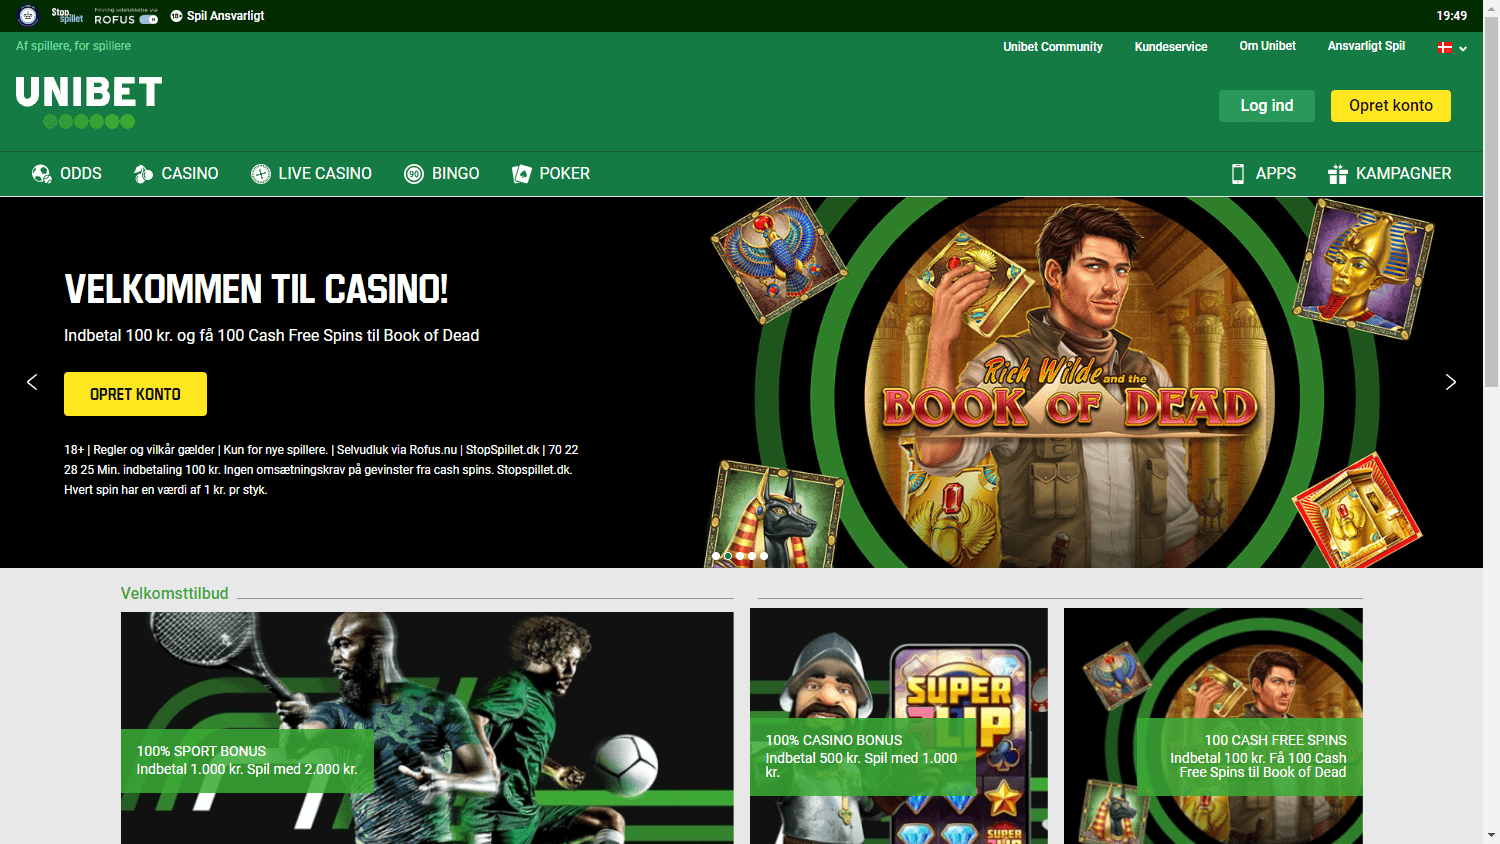 unibet_casino_dk_homepage_desktop